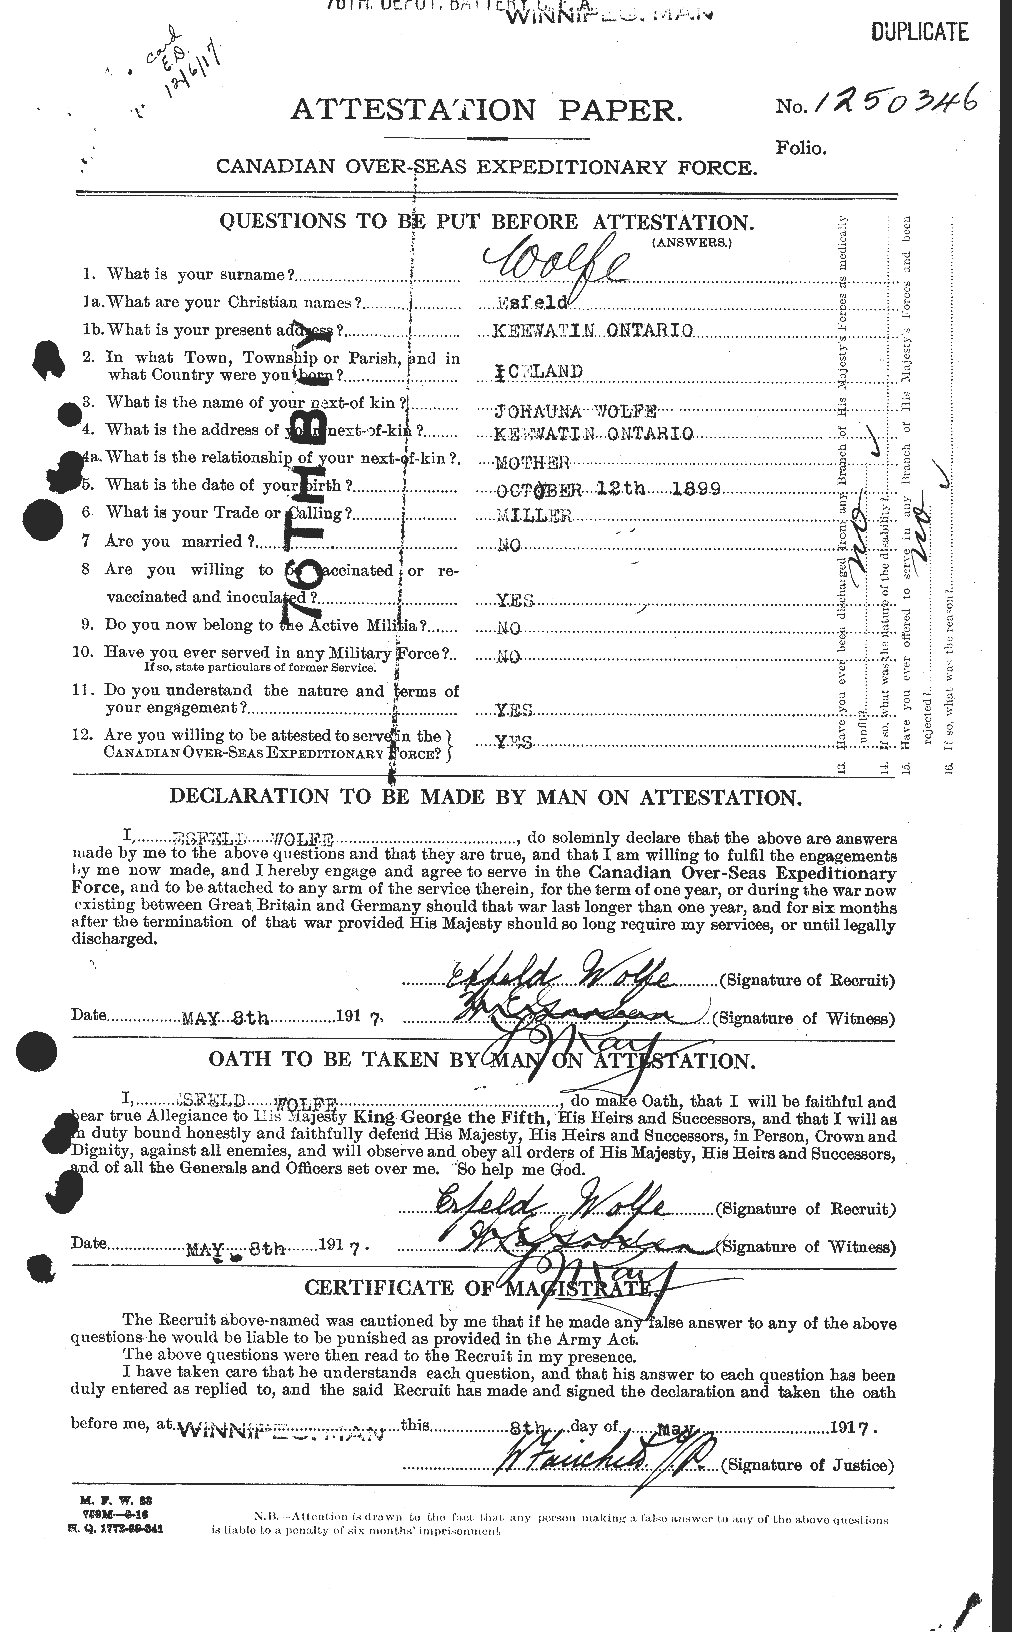 Dossiers du Personnel de la Première Guerre mondiale - CEC 682329a